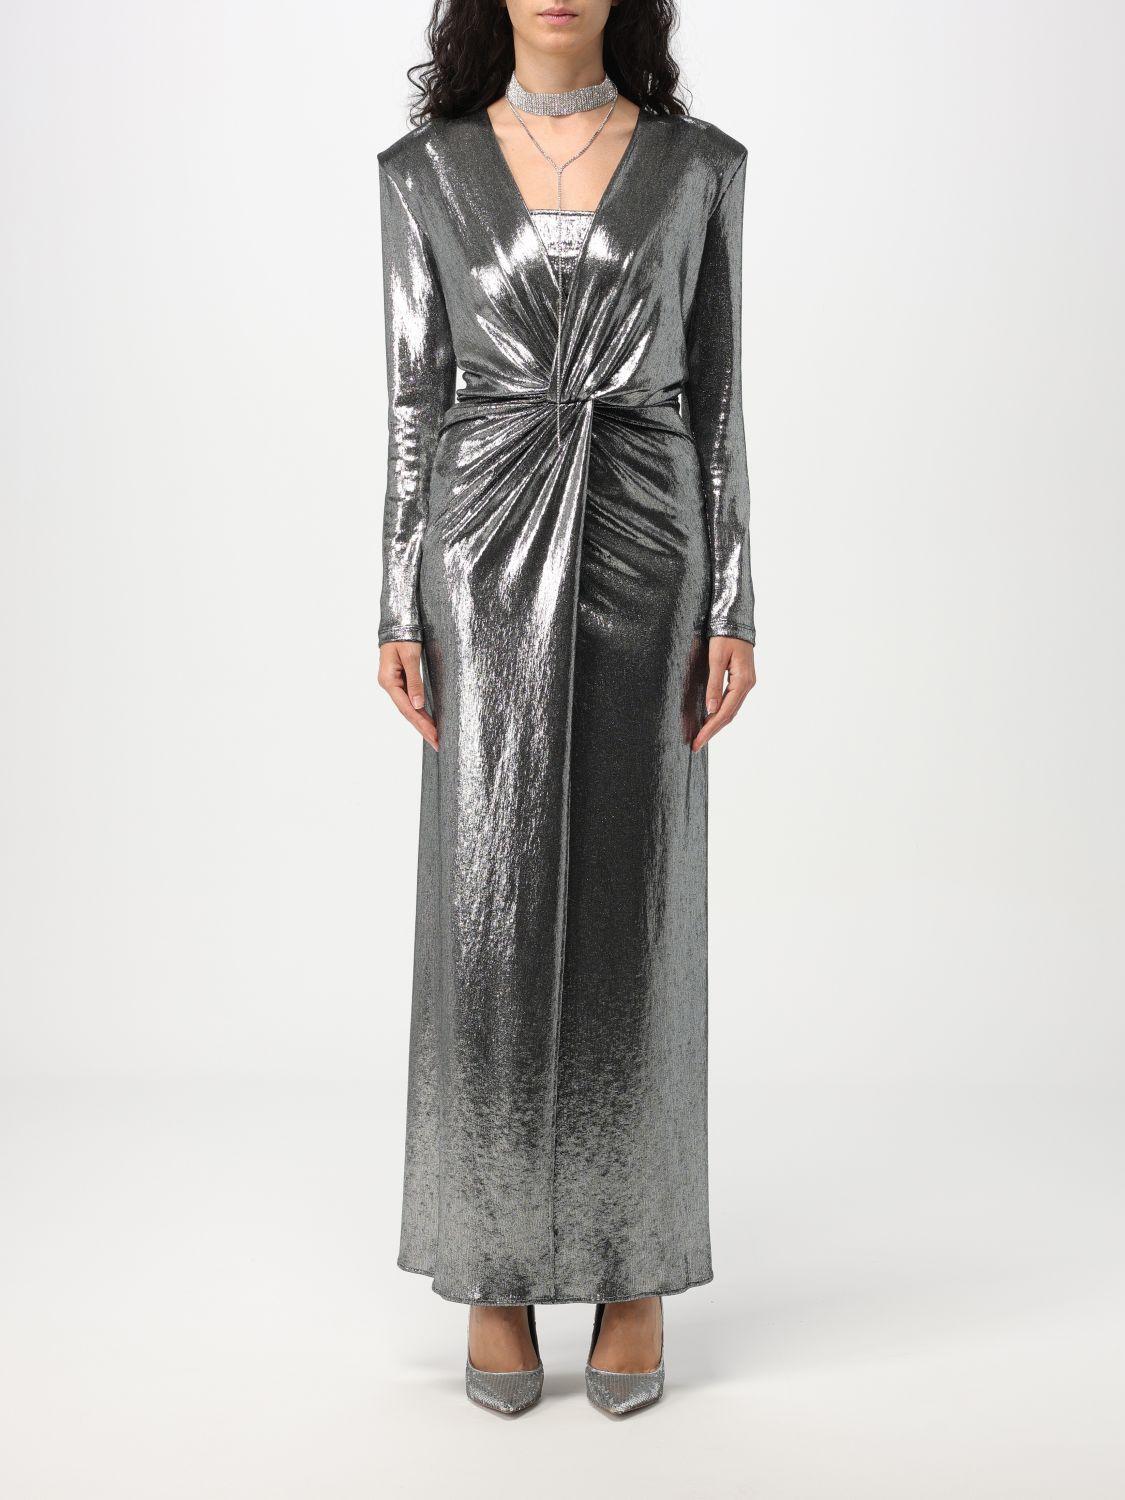 SIMONA CORSELLINI Dress in Grey | Lyst UK